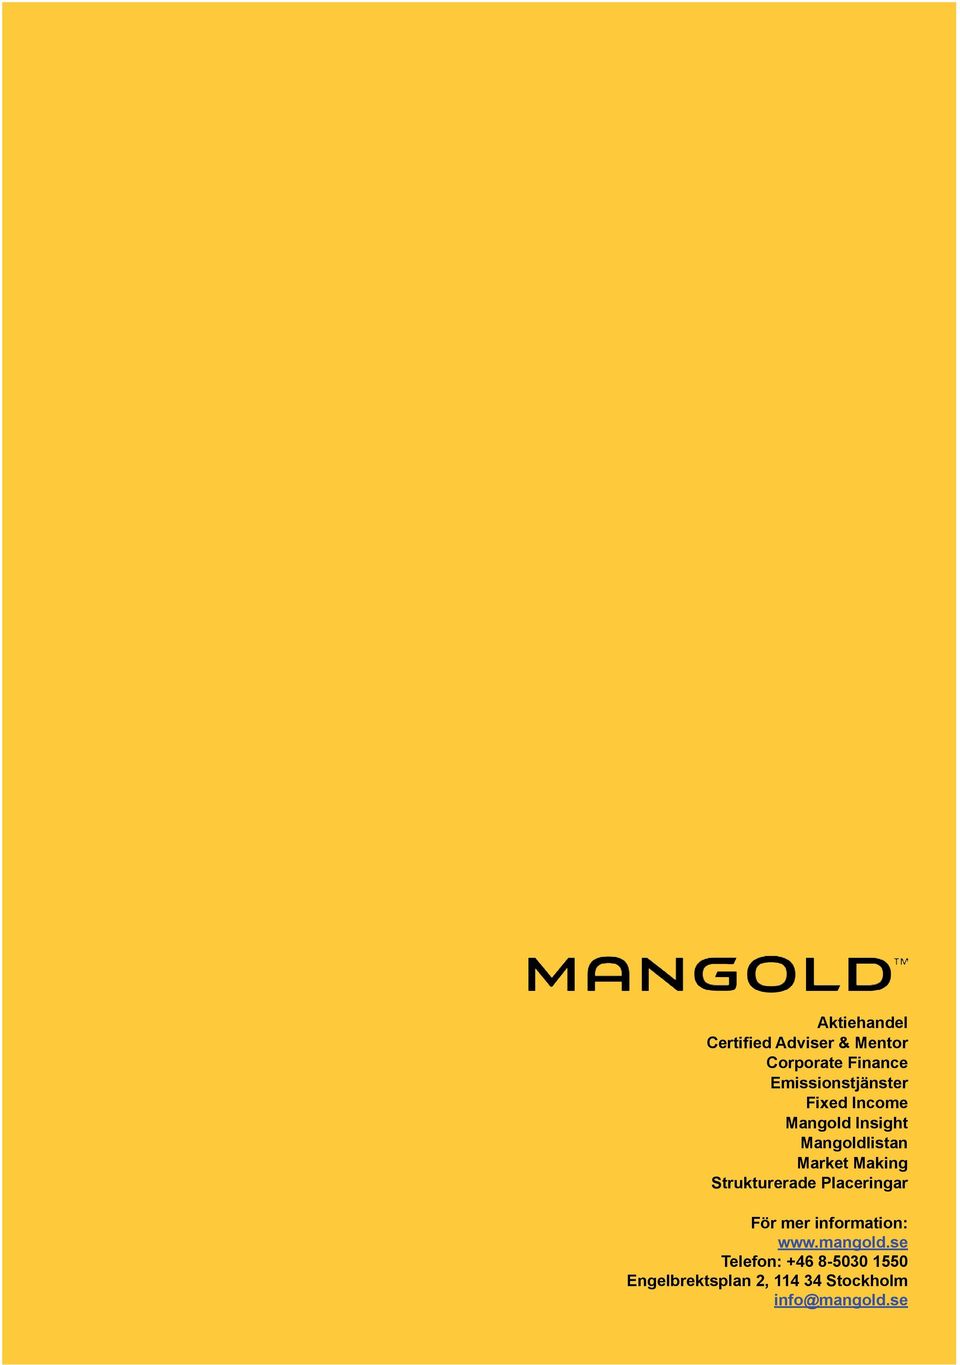 Making Strukturerade Placeringar För mer information: www.mangold.